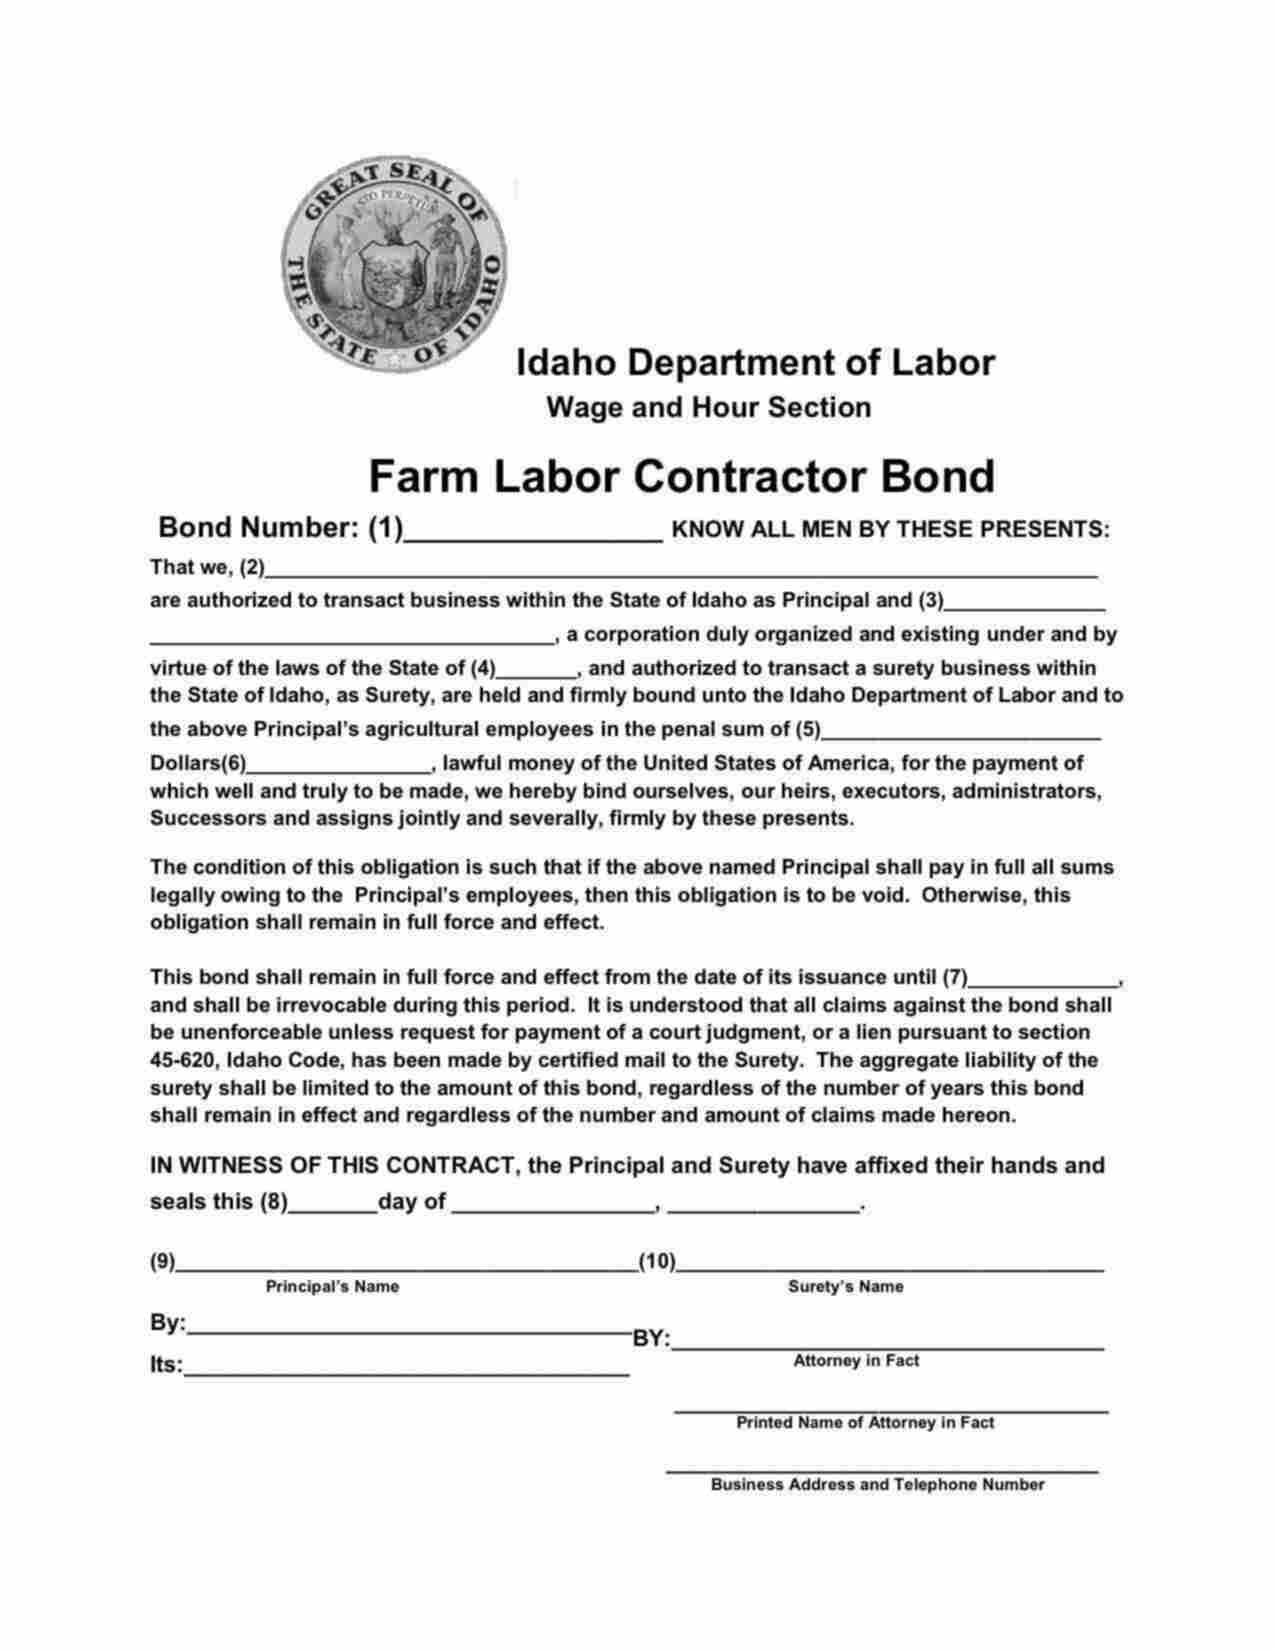 Idaho Farm Labor Contractor Bond Form